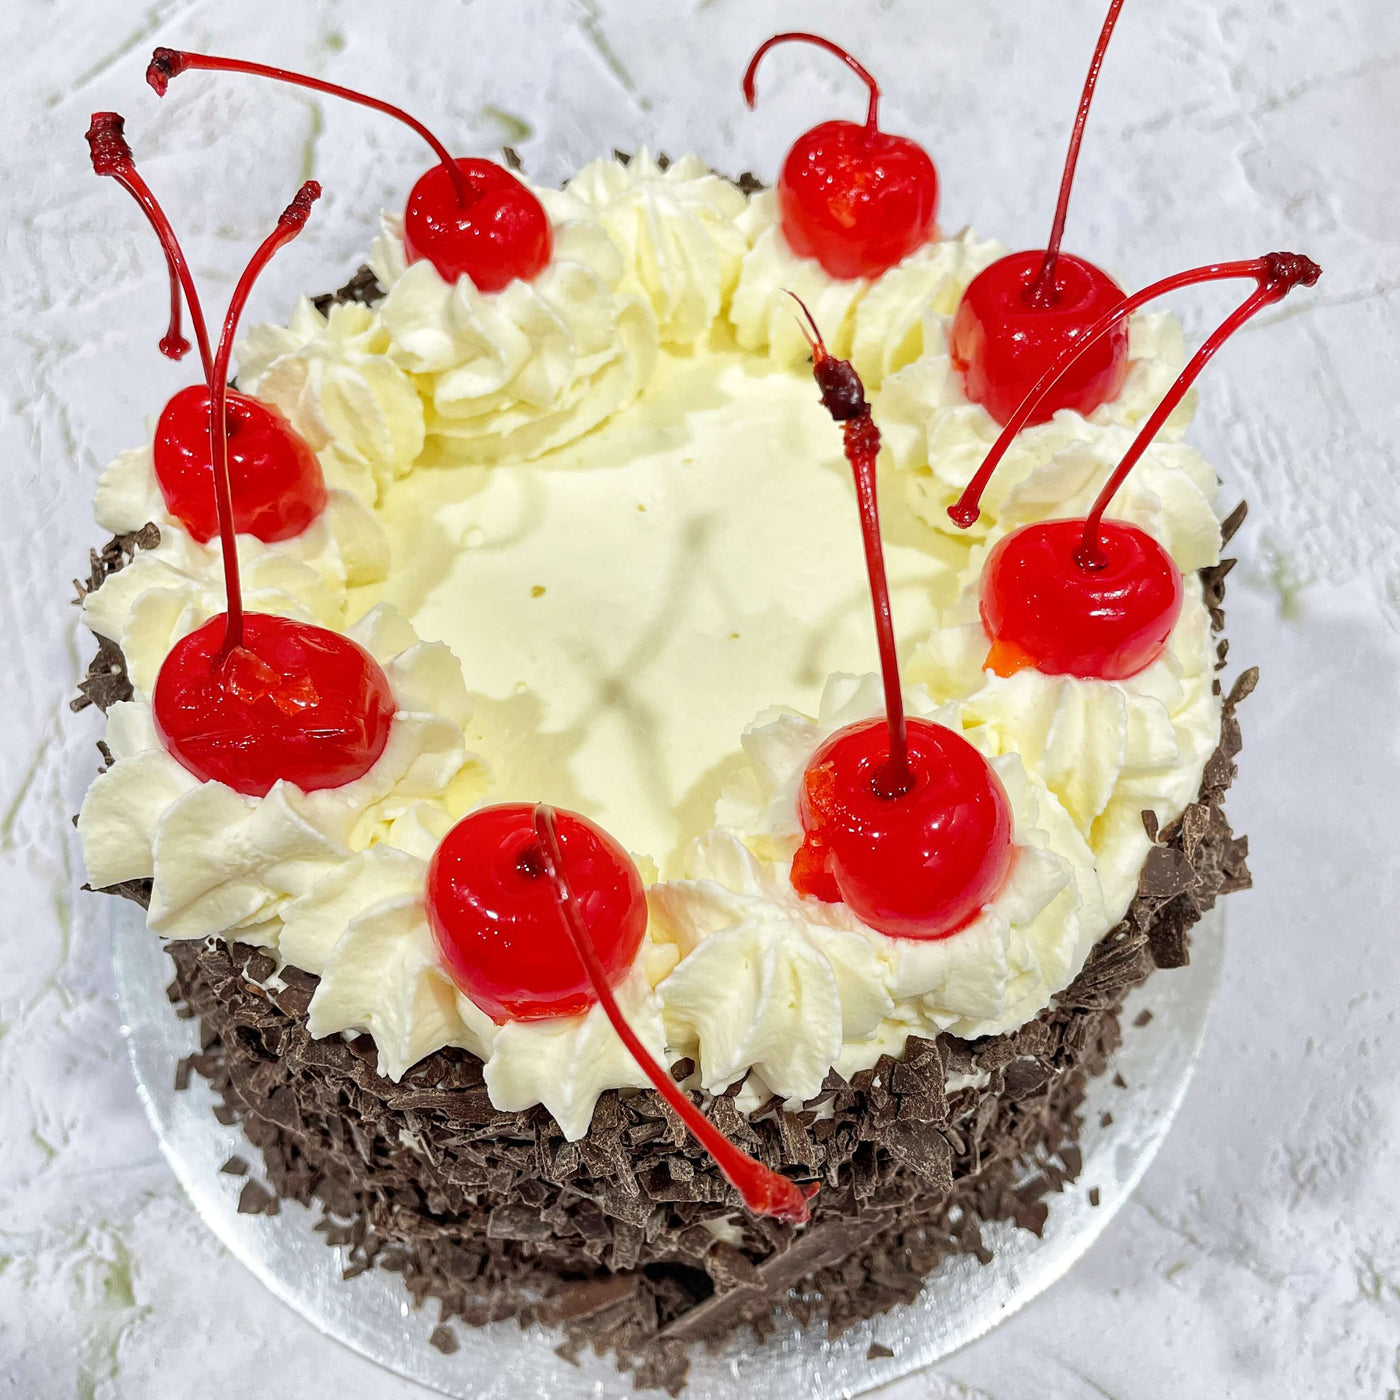 Hirral'z Sweet Treats9 – Cakes, Energy Bars, Healthy Cookies, Diabetic Cake,  Vegan, Gluten Free Sugar Free Cakes, Brownies - Cake Shop in Kandivali West